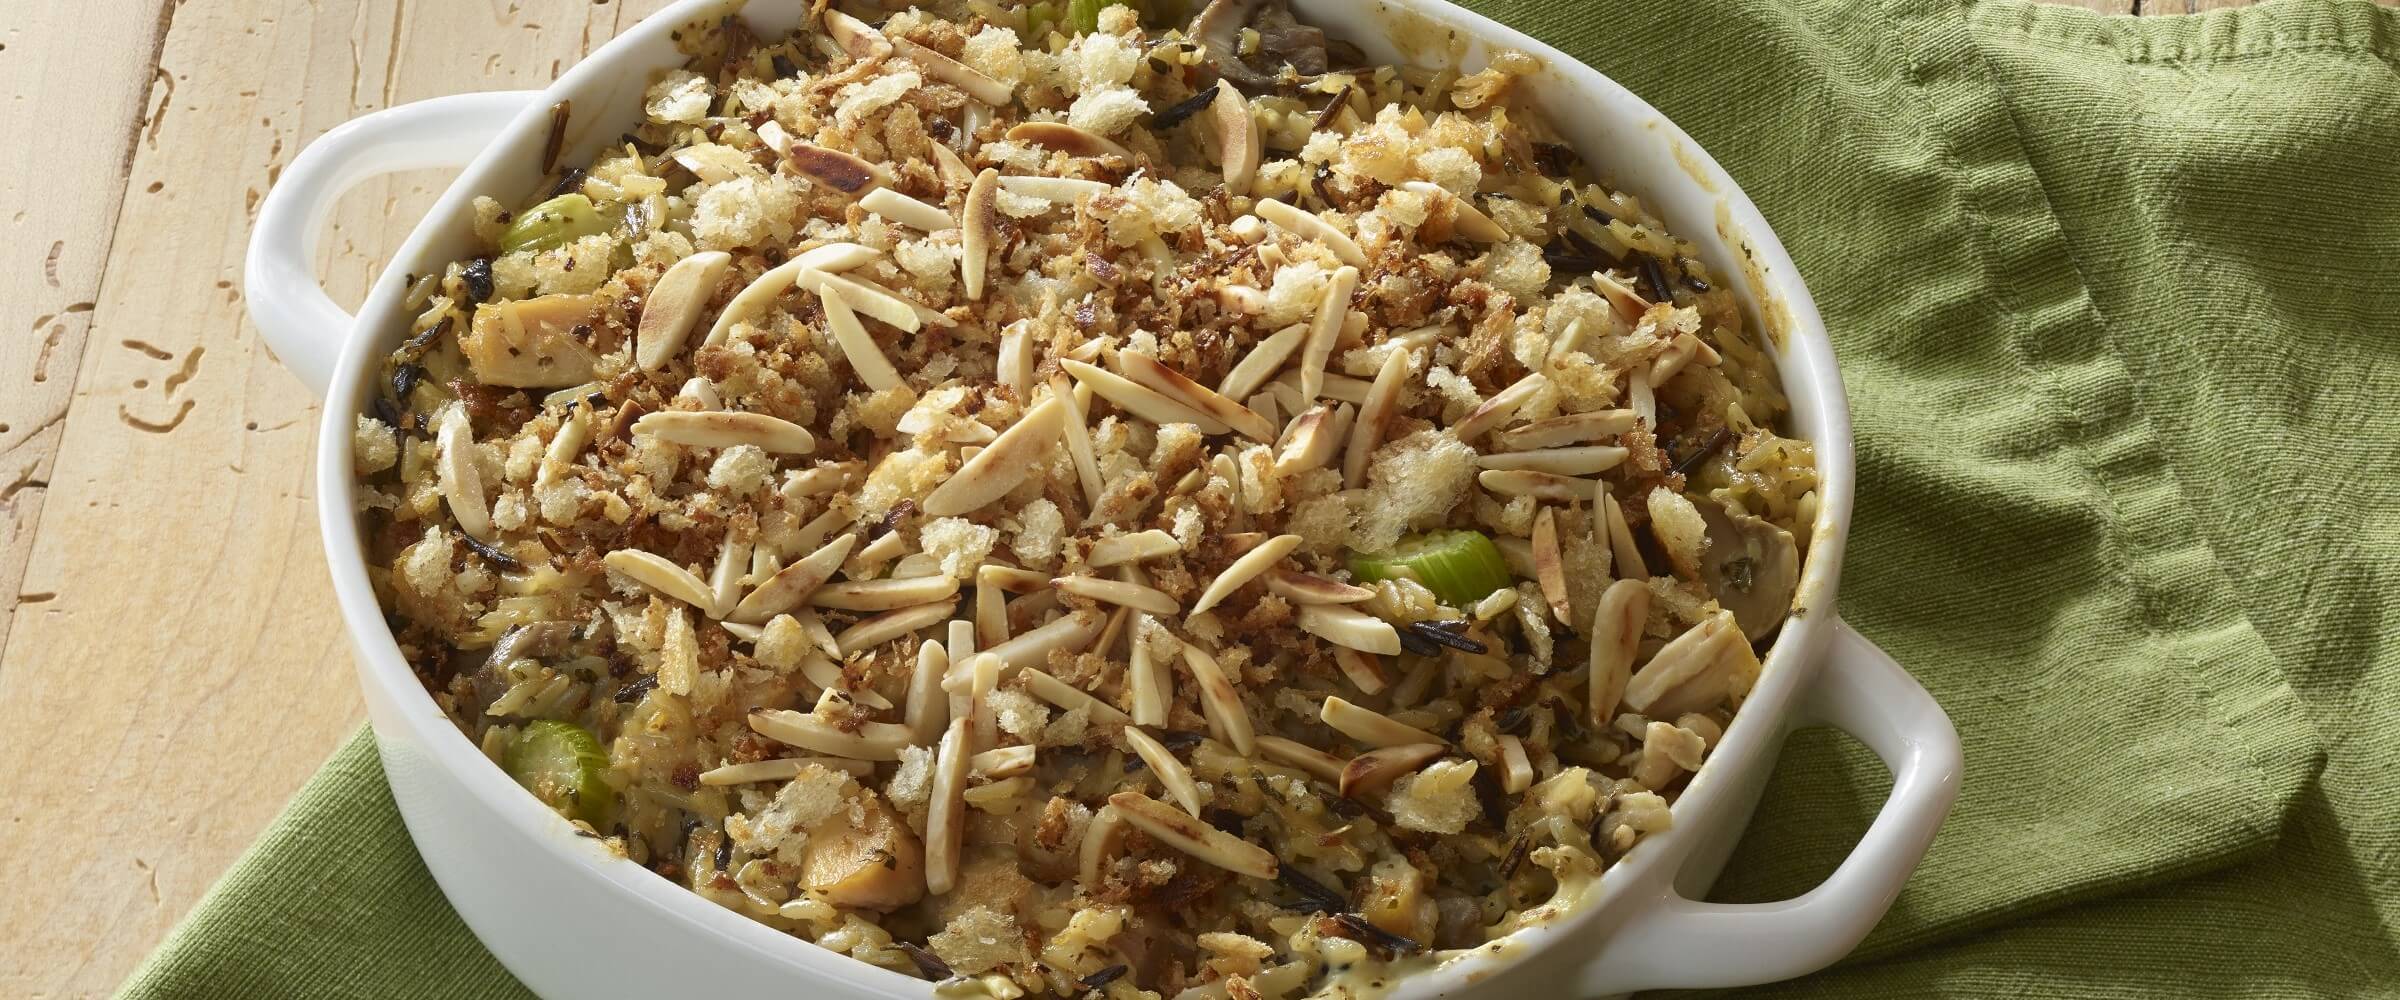 Chicken wild rice casserole